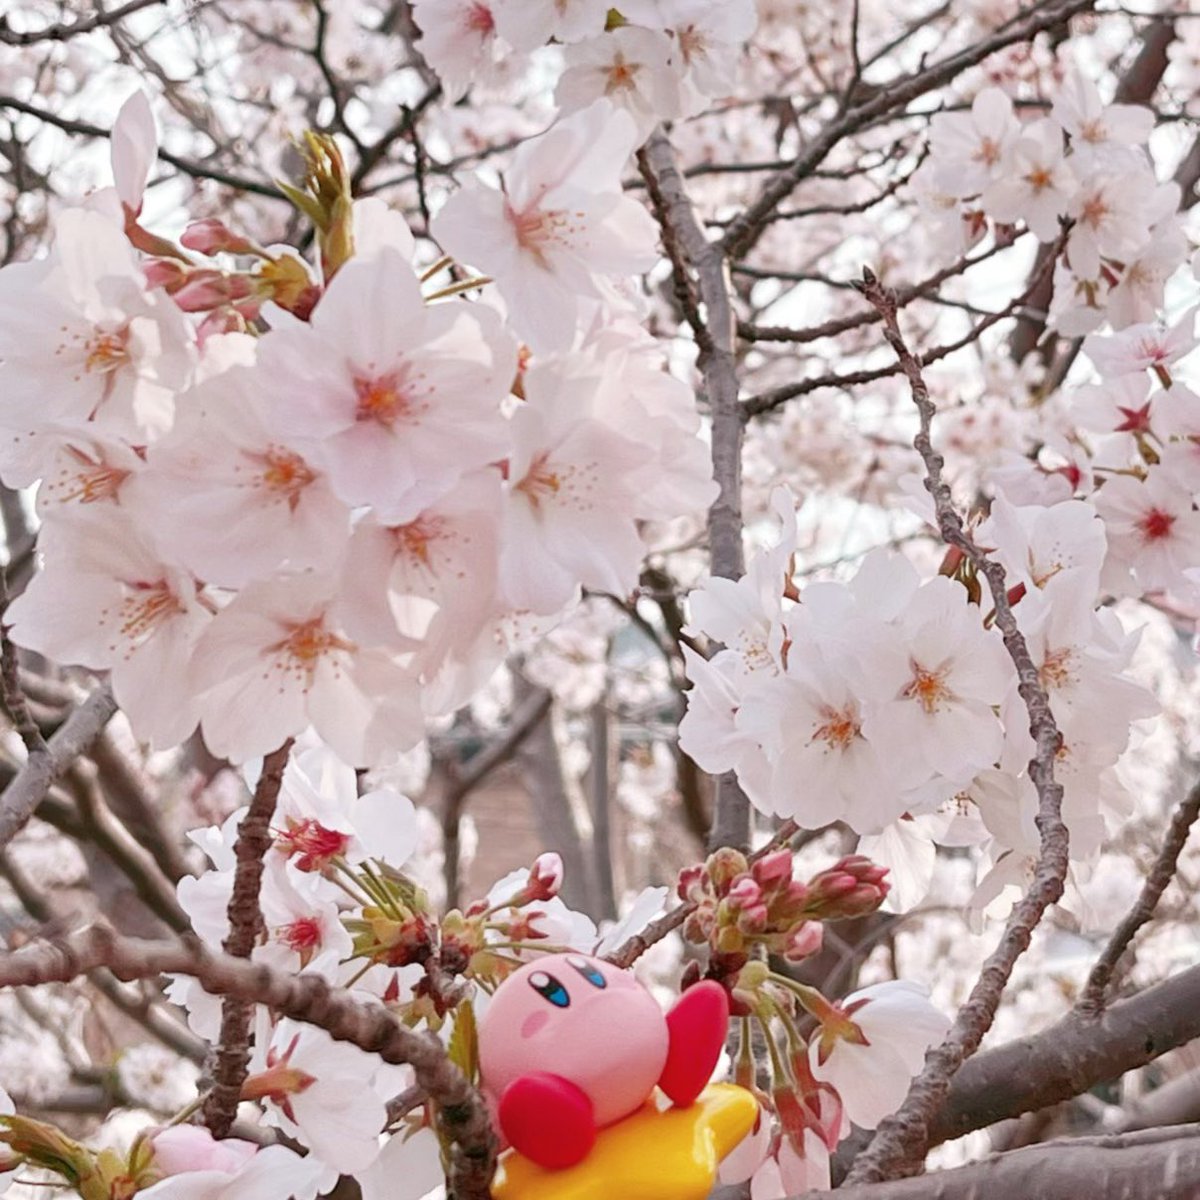 どんな桜よりカービィちゃんのシャクレの方が綺麗だよ…(  ᷄ᾥ ᷅ ︎🫶🏻)